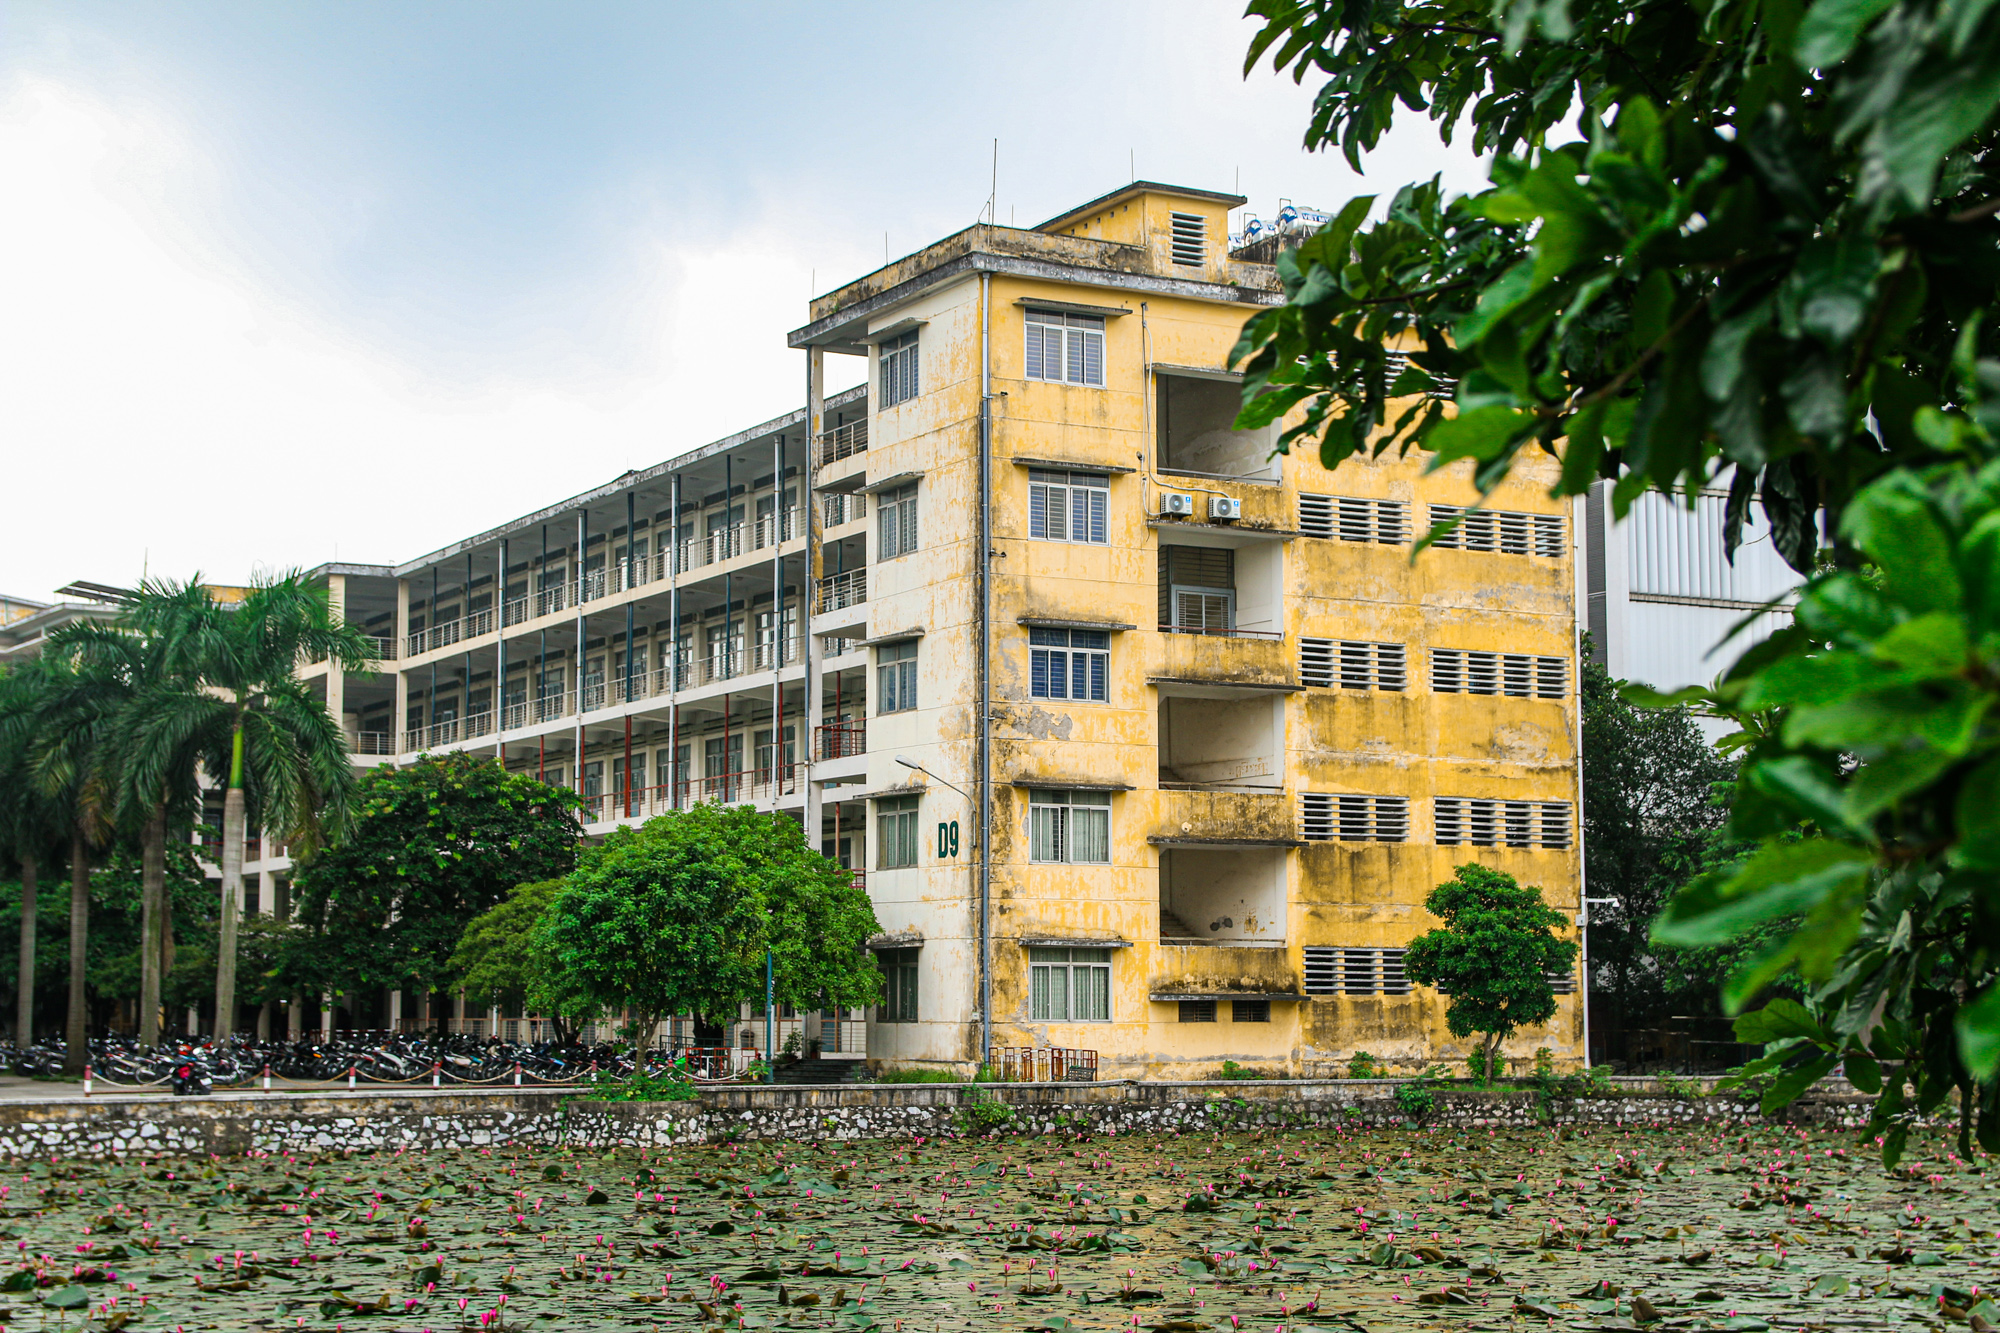 Trường đại học rộng nhất trung tâm Hà Nội, sinh viên phải tra bản đồ để tìm đường - Ảnh 6.